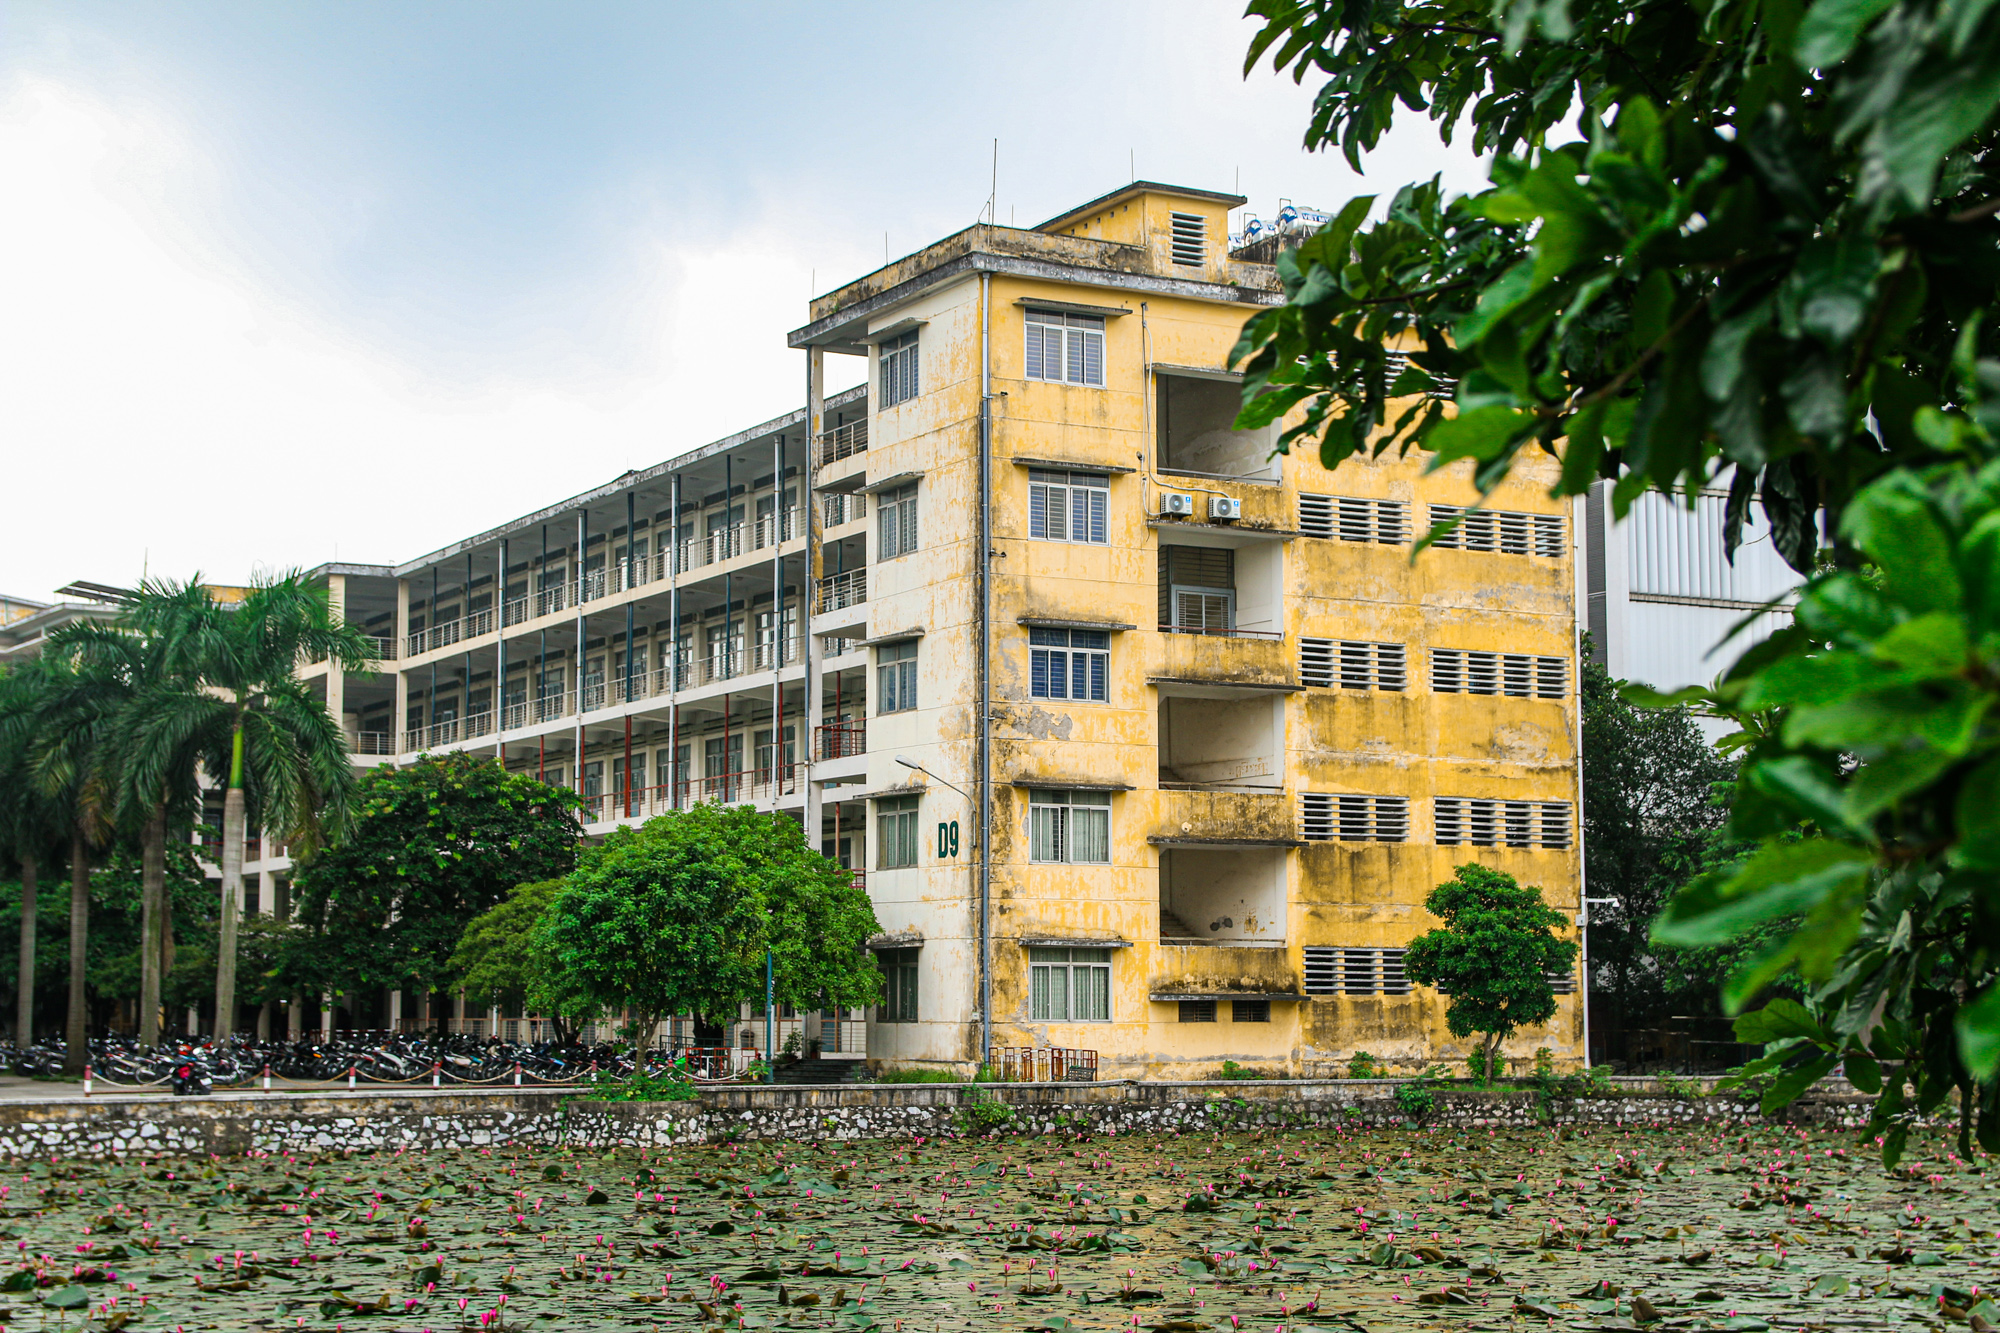 Trường đại học rộng nhất trung tâm Hà Nội, sinh viên phải tra bản đồ để tìm đường - Ảnh 6.